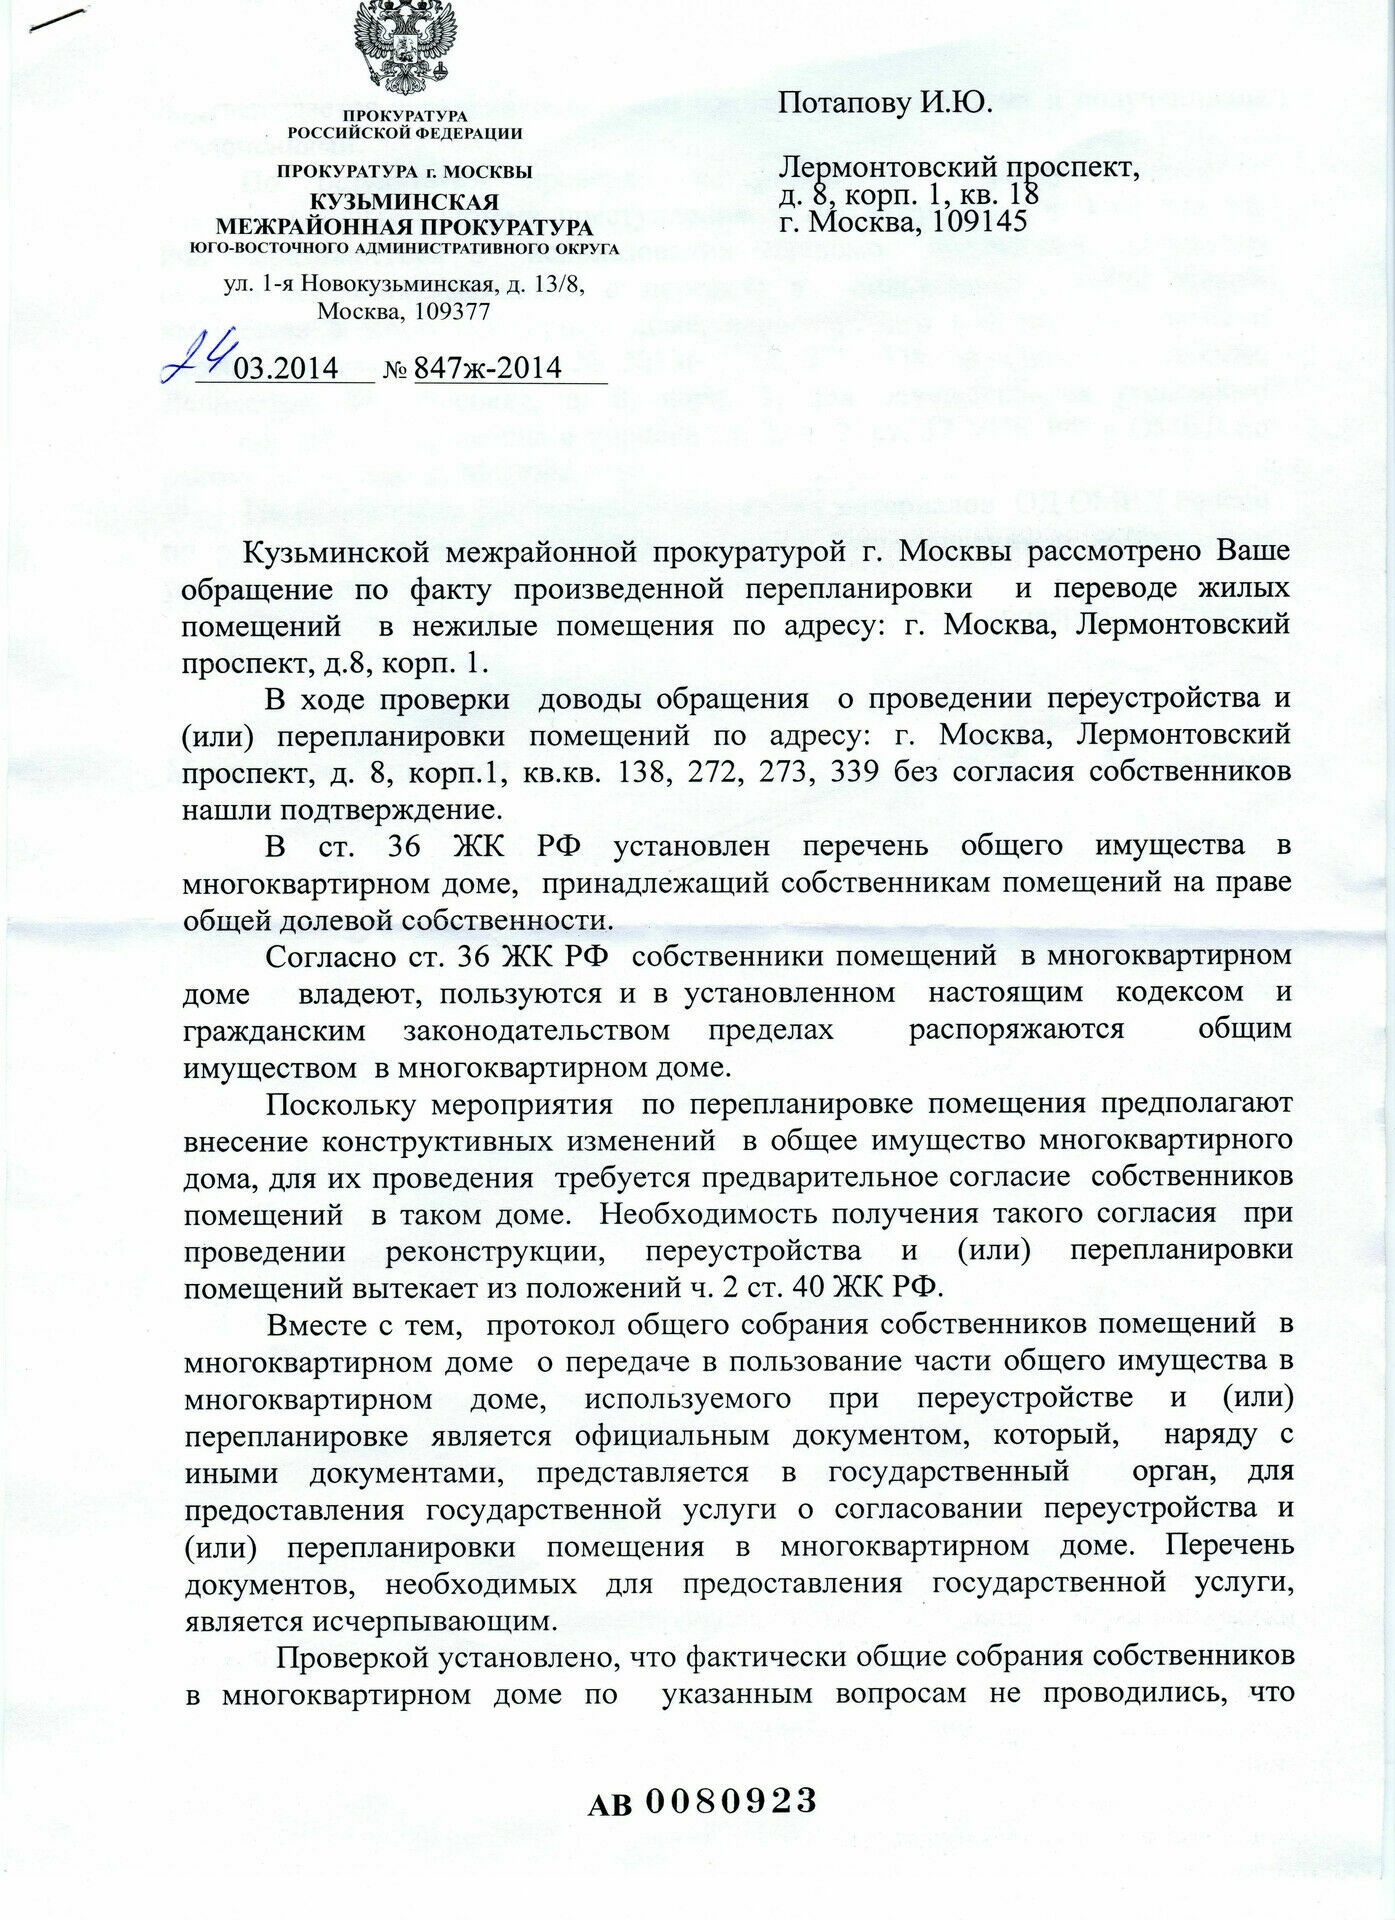 Ответ прокурора Кузьминской межрайонный прокуратору на обращение И. Потапова